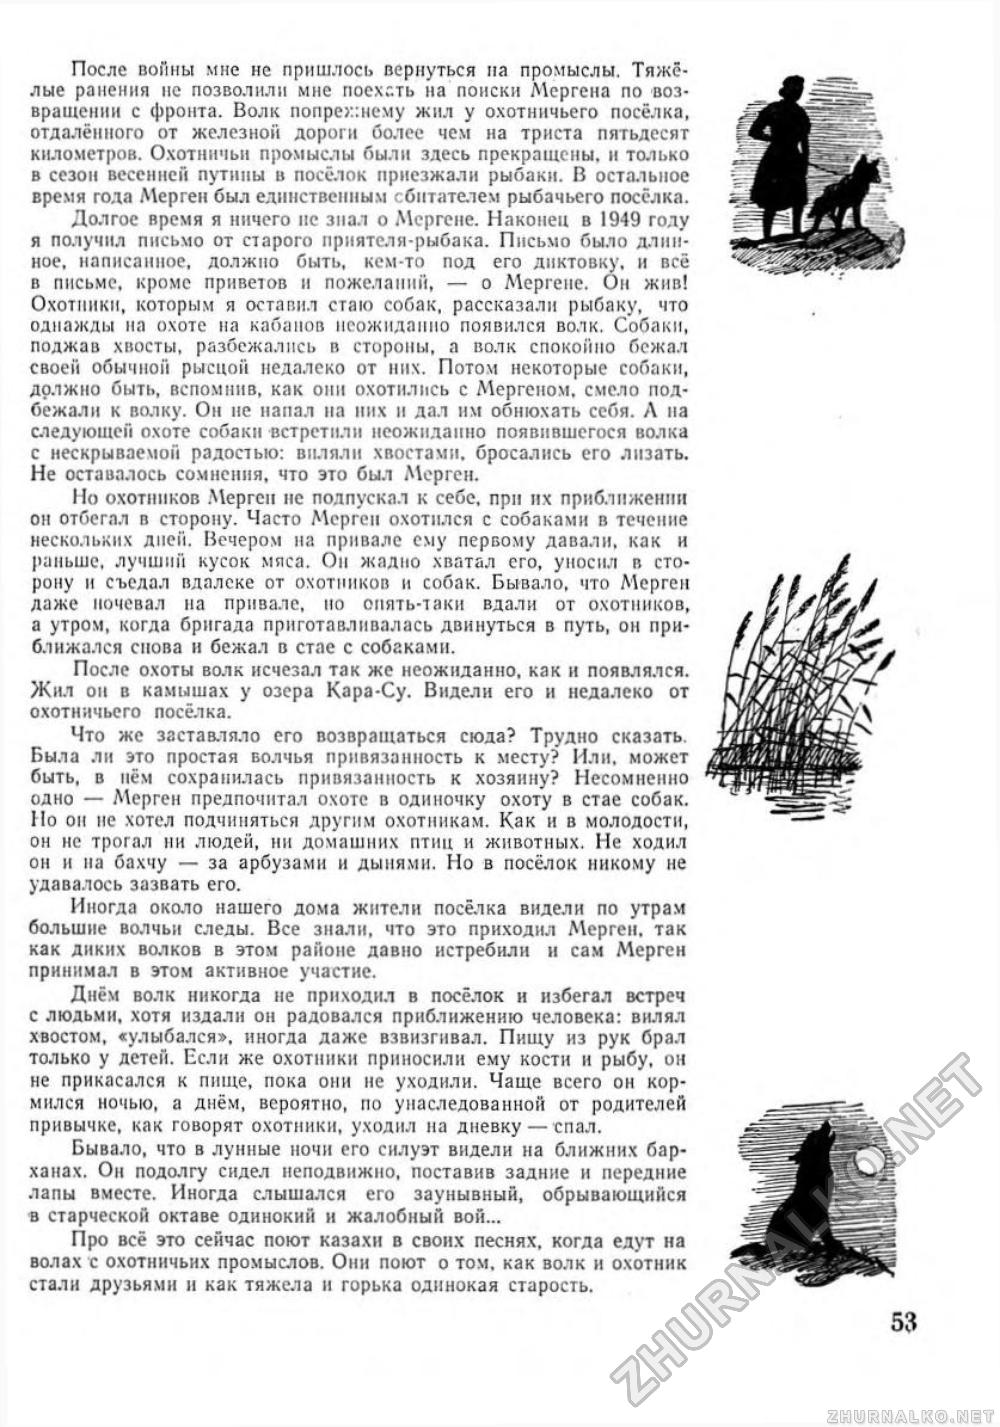 Пионер 1955-10, страница 58